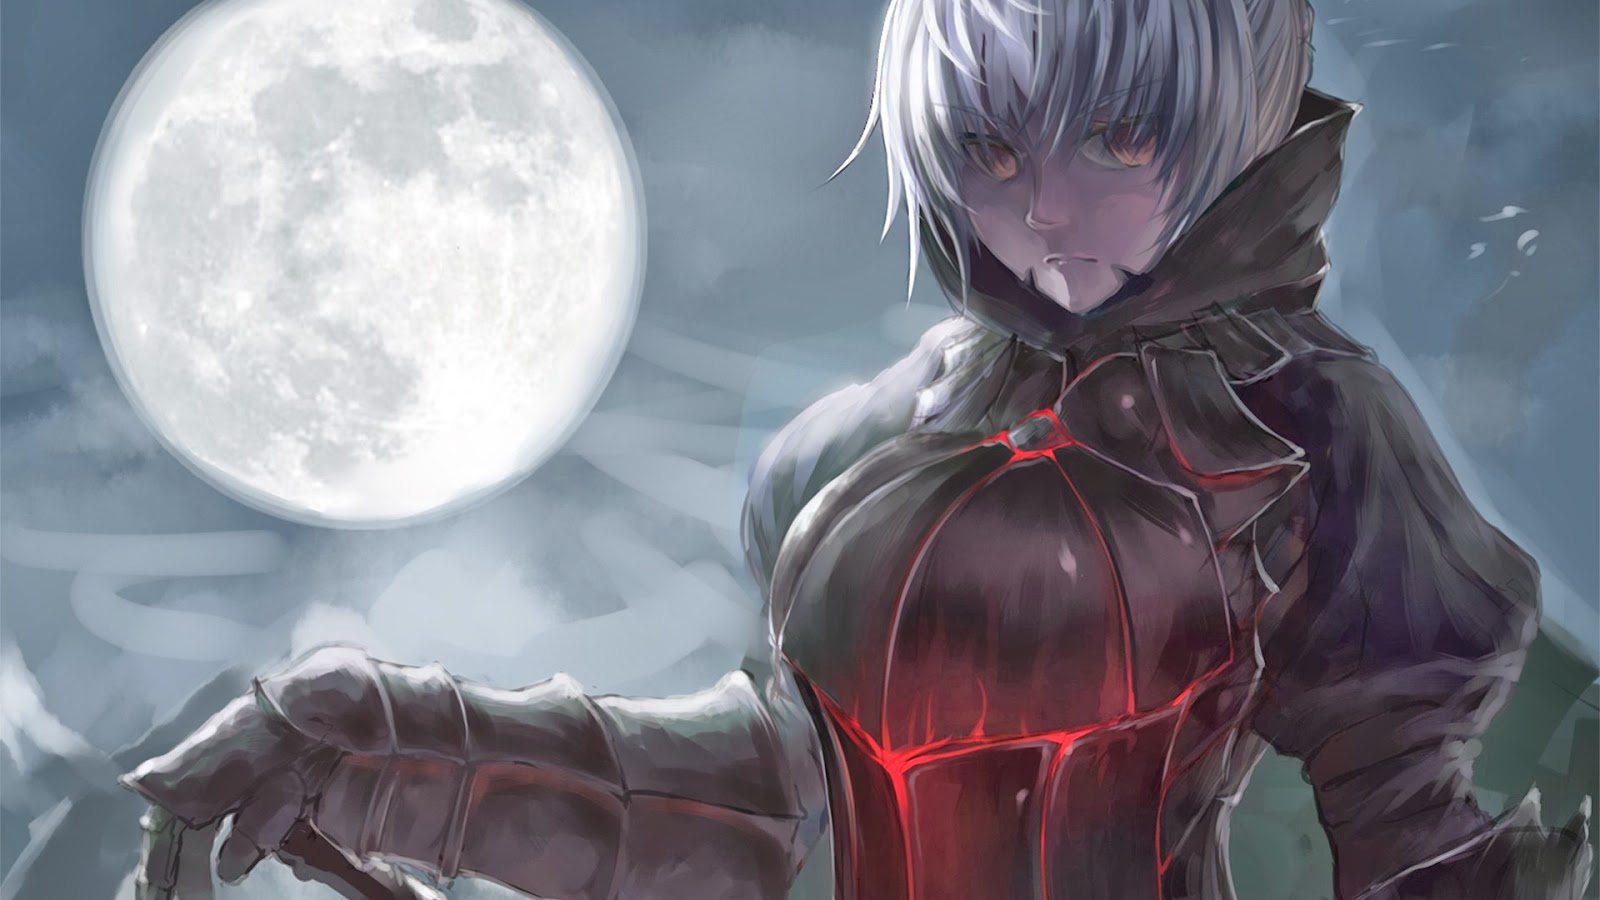 Black Saber Fate Stay Night Wallpaper Anime Girl Full Moon Armor Sword